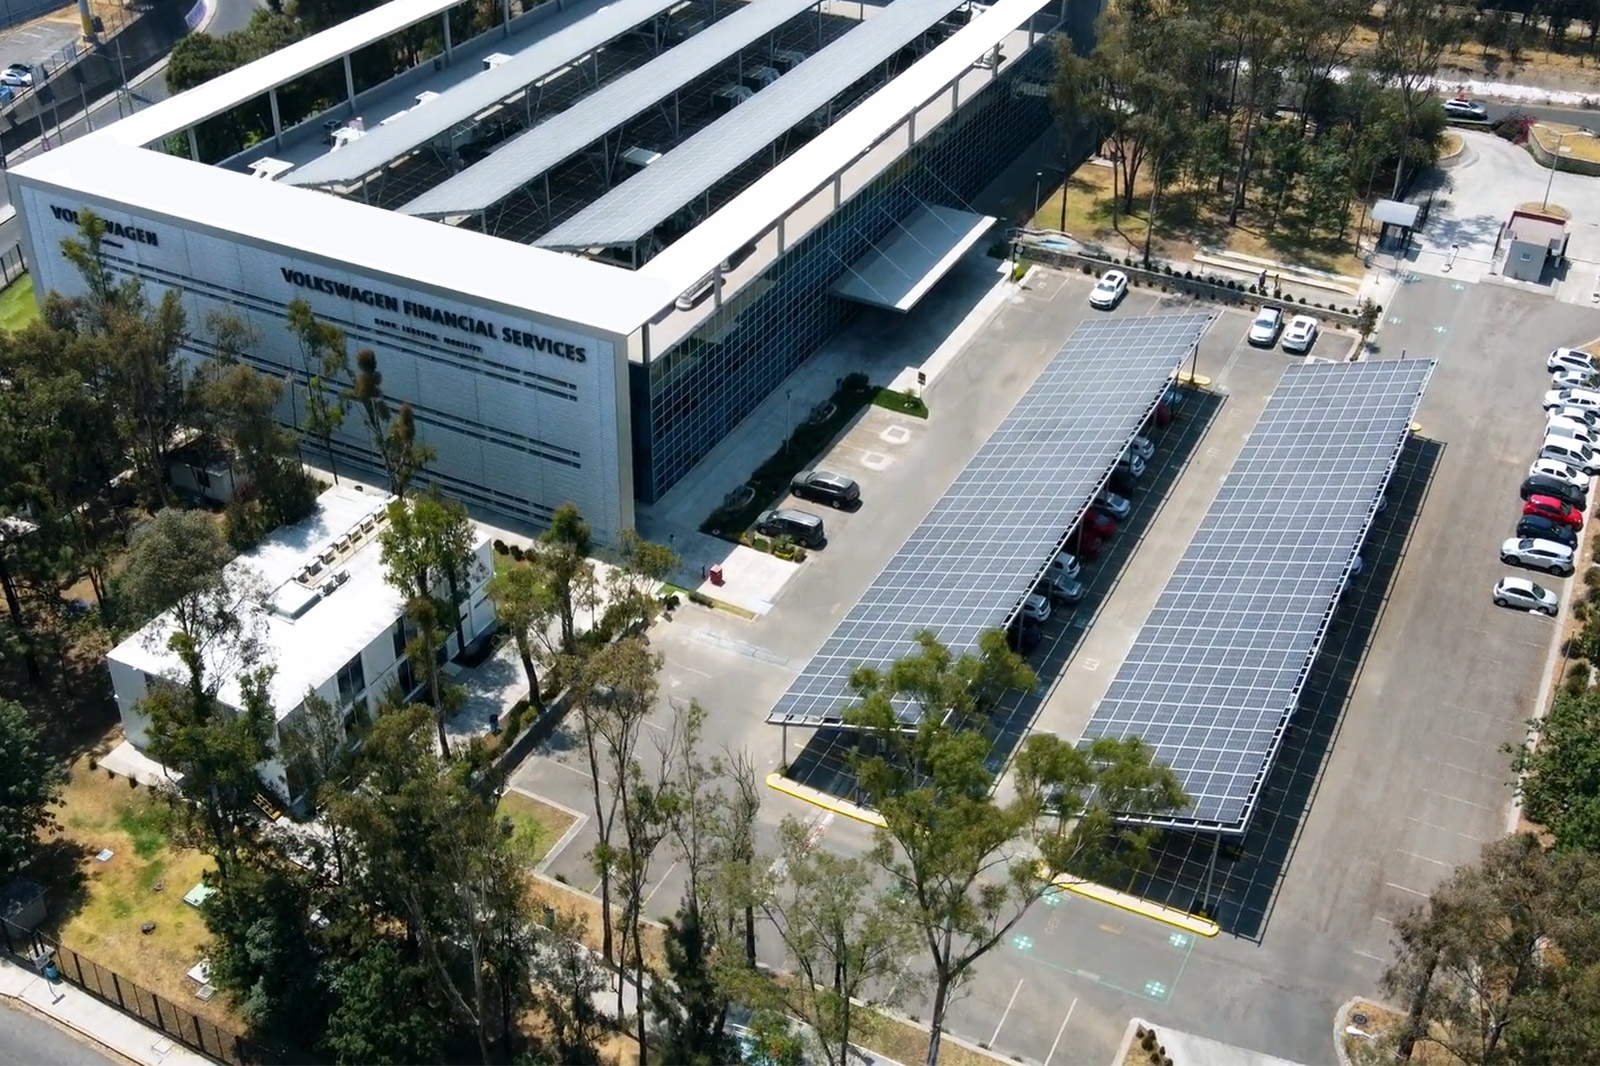 Volkswagen Financial Services reduce su huella de carbono al instalar celdas solares